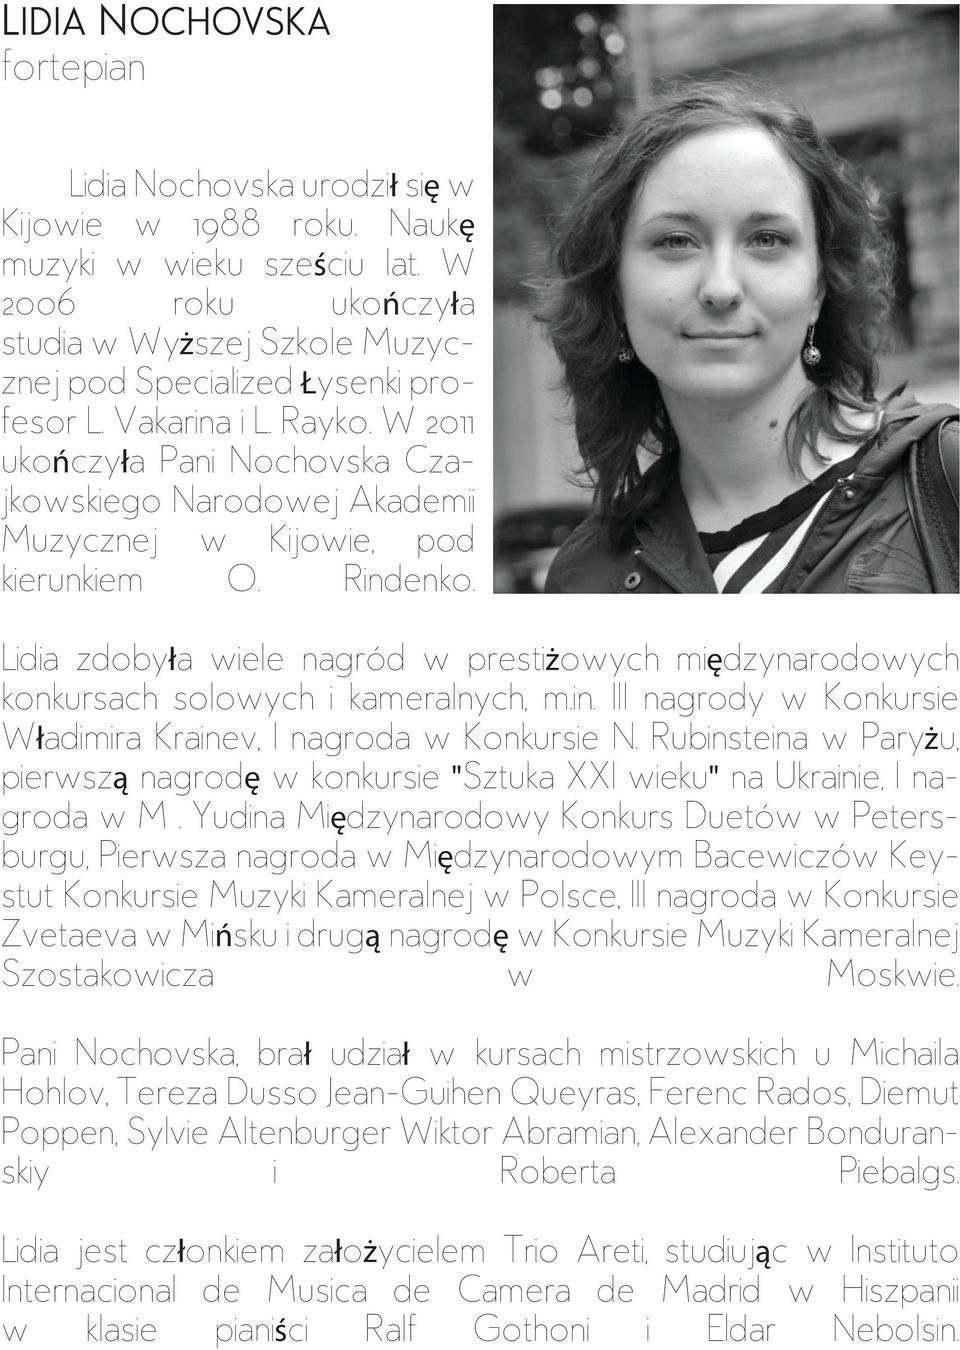 W 2011 ukończyła Pani Nochovska Czajkowskiego Narodowej Akademii Muzycznej w Kijowie, pod kierunkiem O. Rindenko.